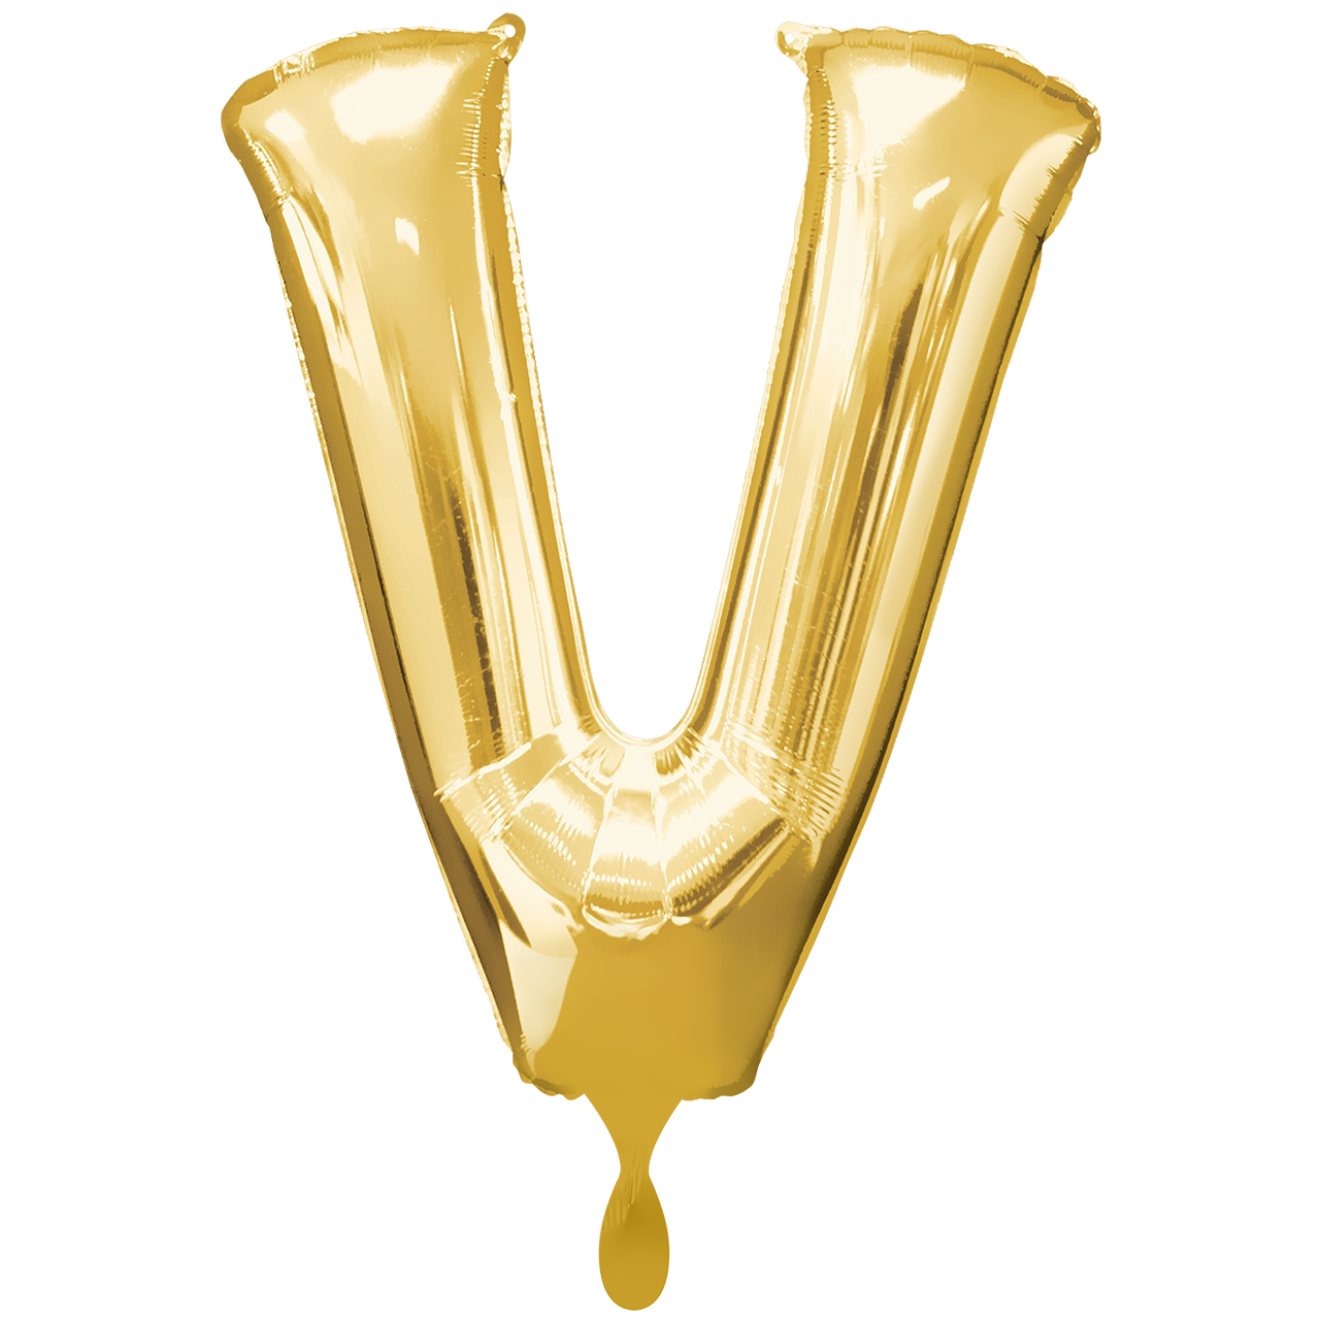 1 Balloon XXL - Buchstabe V - Gold